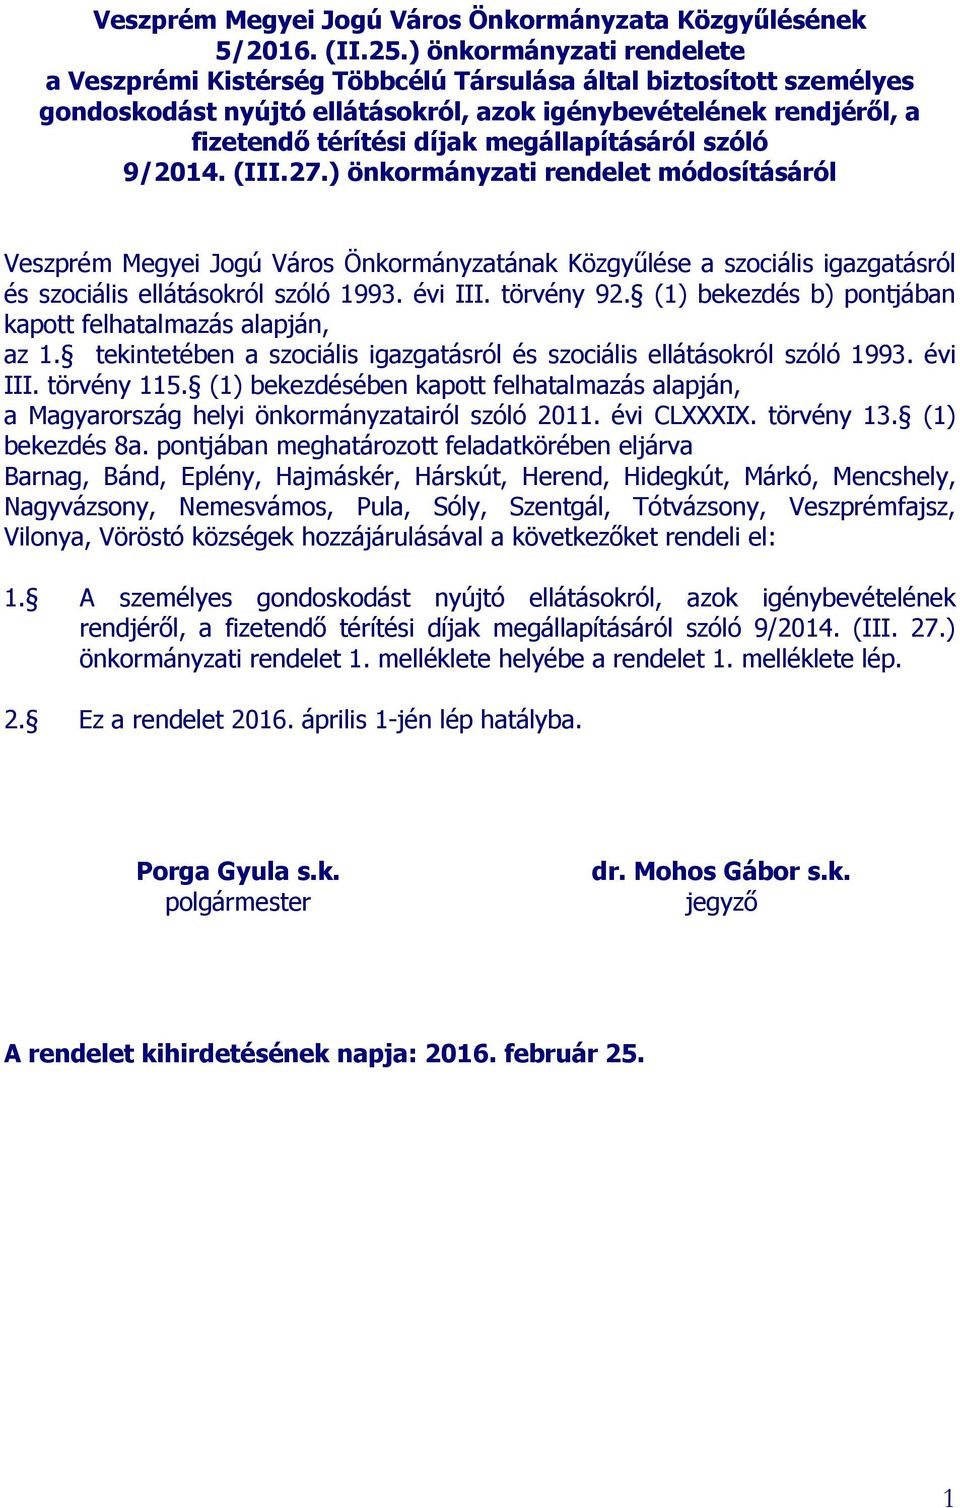 szóló 9/201 (III.27.) önkormányzati rendelet módosításáról Veszprém Megyei Jogú Város Önkormányzatának Közgyűlése a szociális igazgatásról és szociális ellátásokról szóló 1993. évi III. törvény 92.